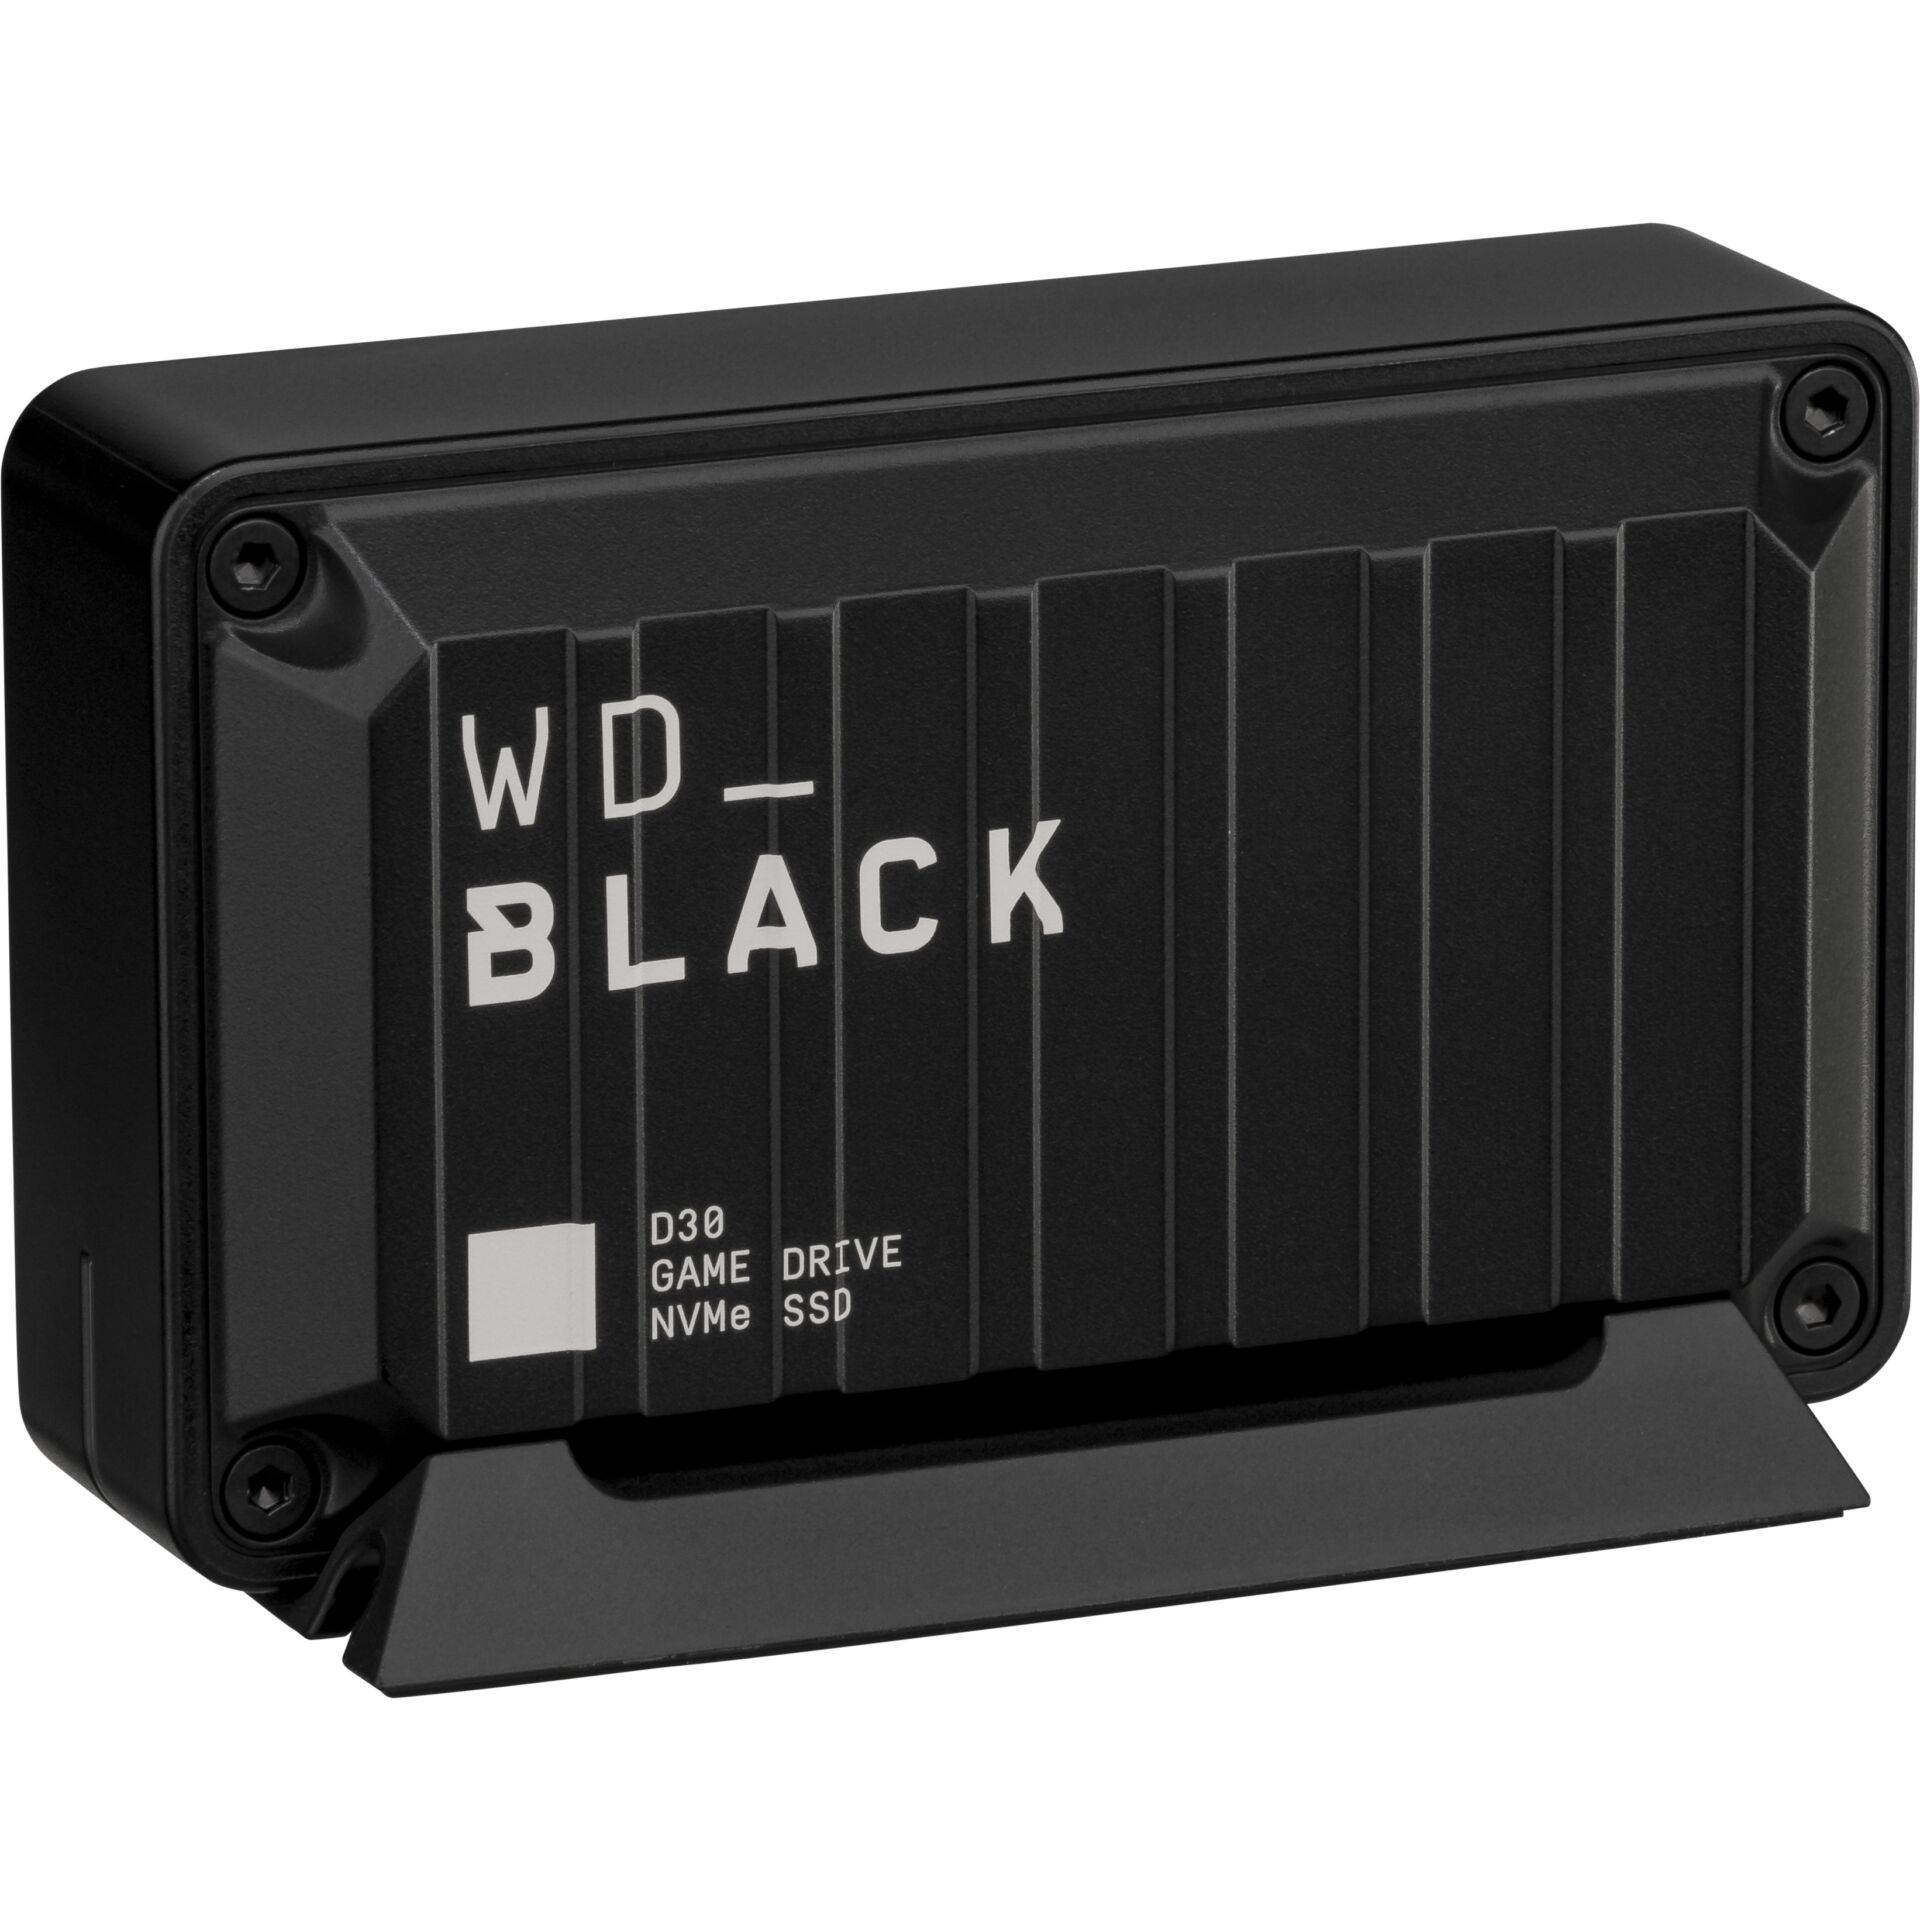 Western Digital Black D30    2TB Game Drive SSD     WDBATL00